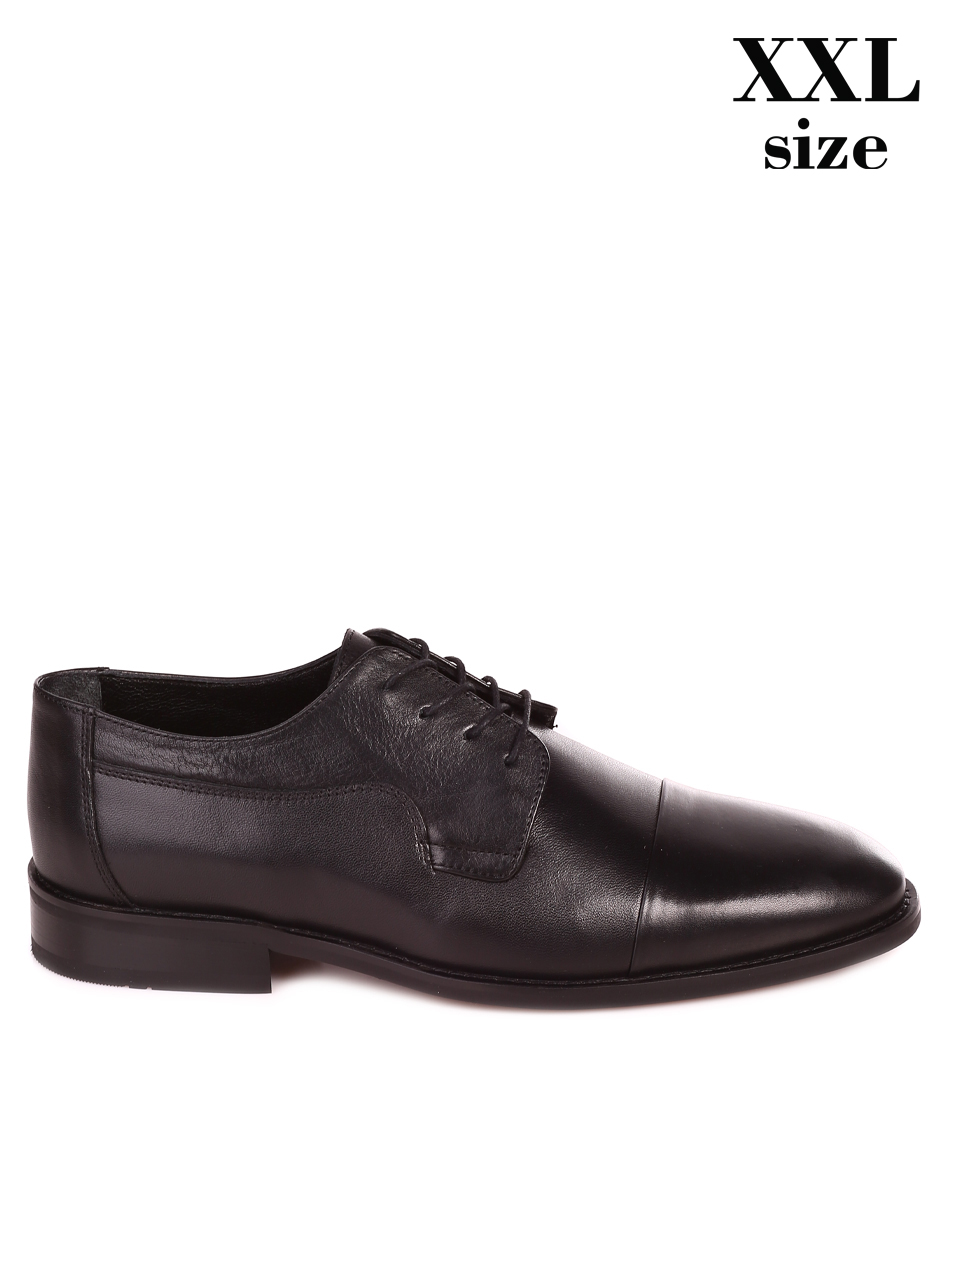 Елегантни мъжки обувки от естествена кожа 7AT-23312 black MAX